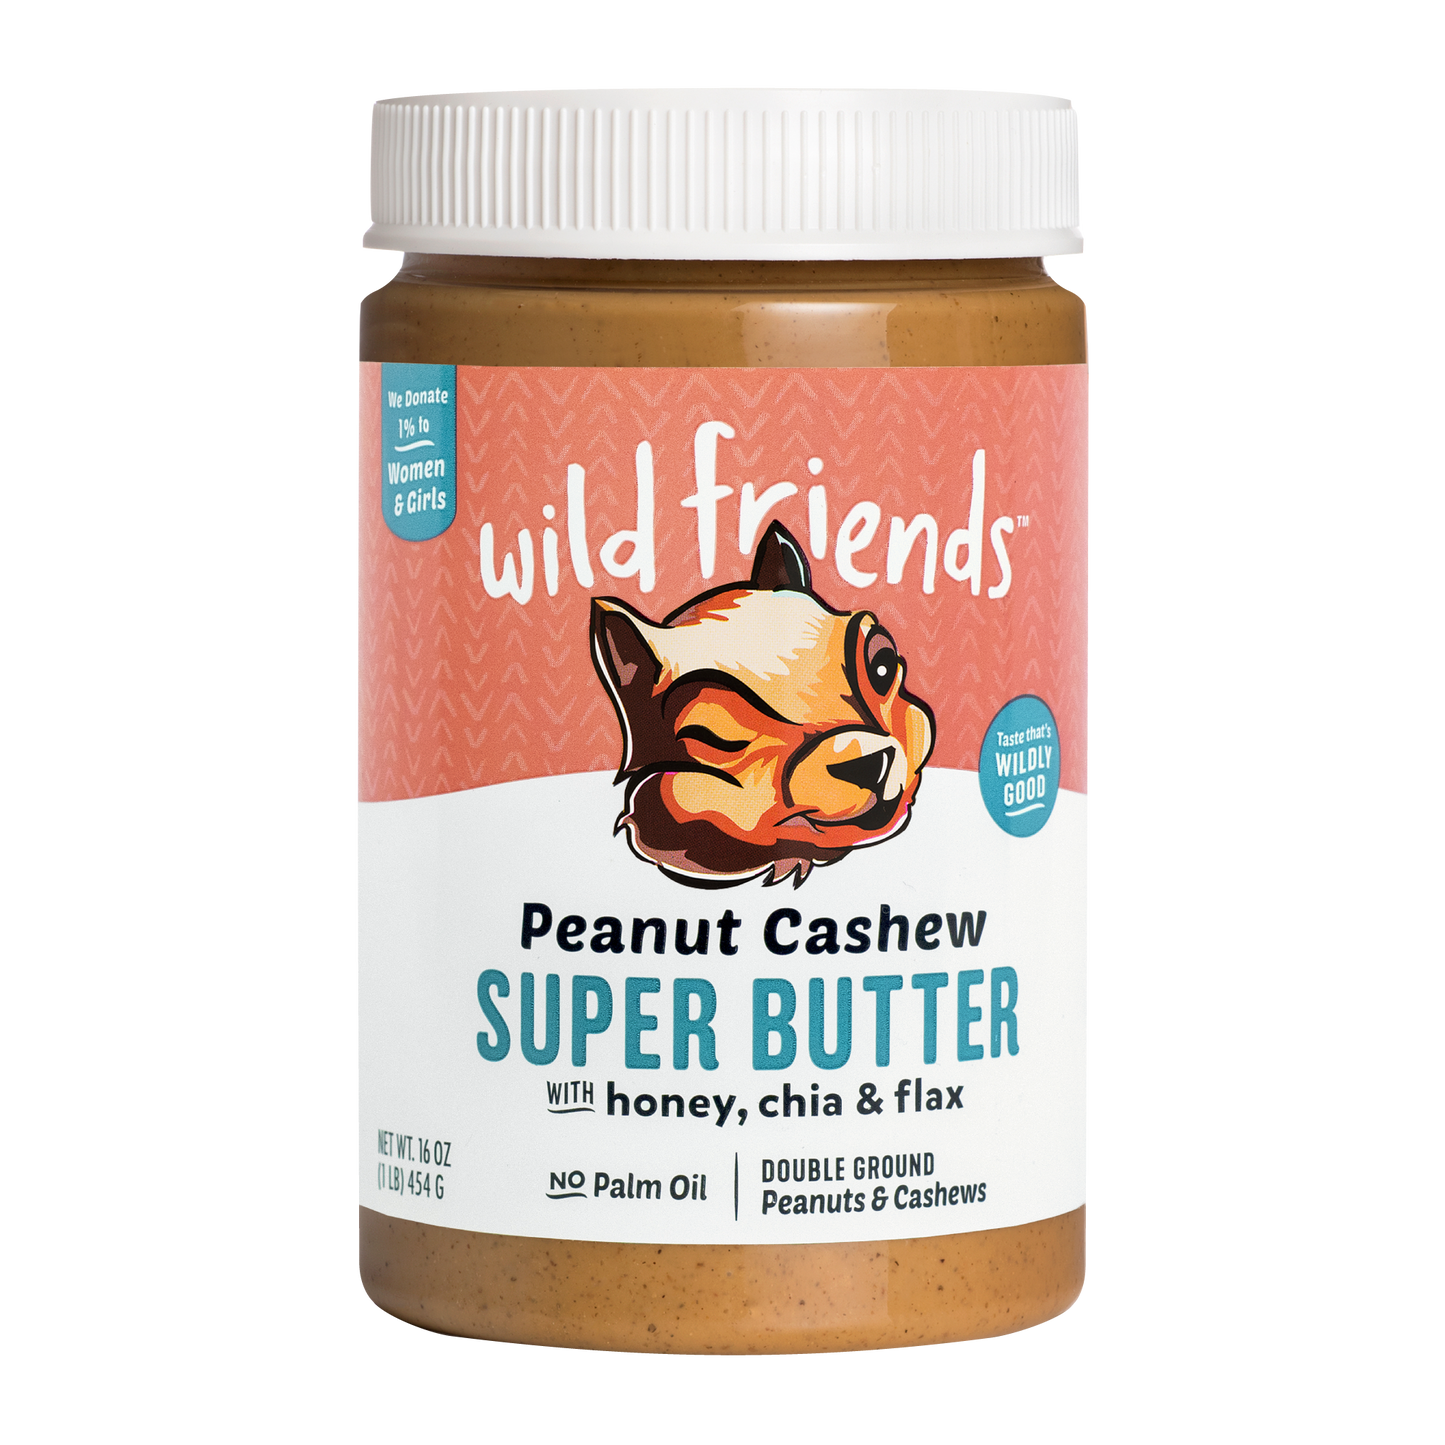 Peanut Cashew Super Butter